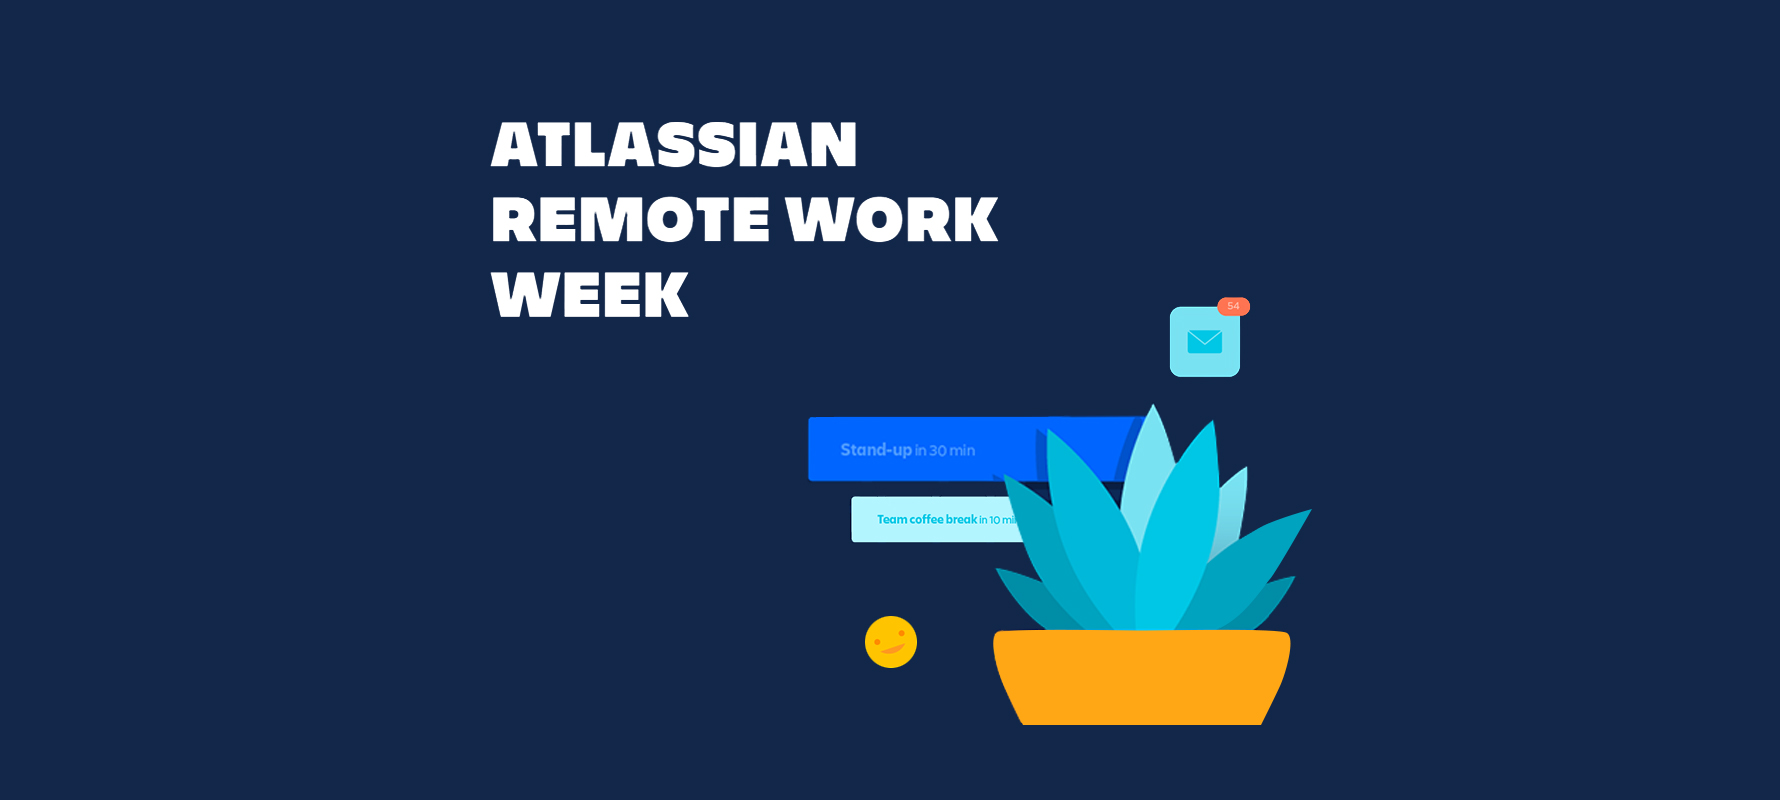 Werbebanner der Atlassian Remote Work Week, Grafik einer Pflanze auf dunkelblauem Hintergrund